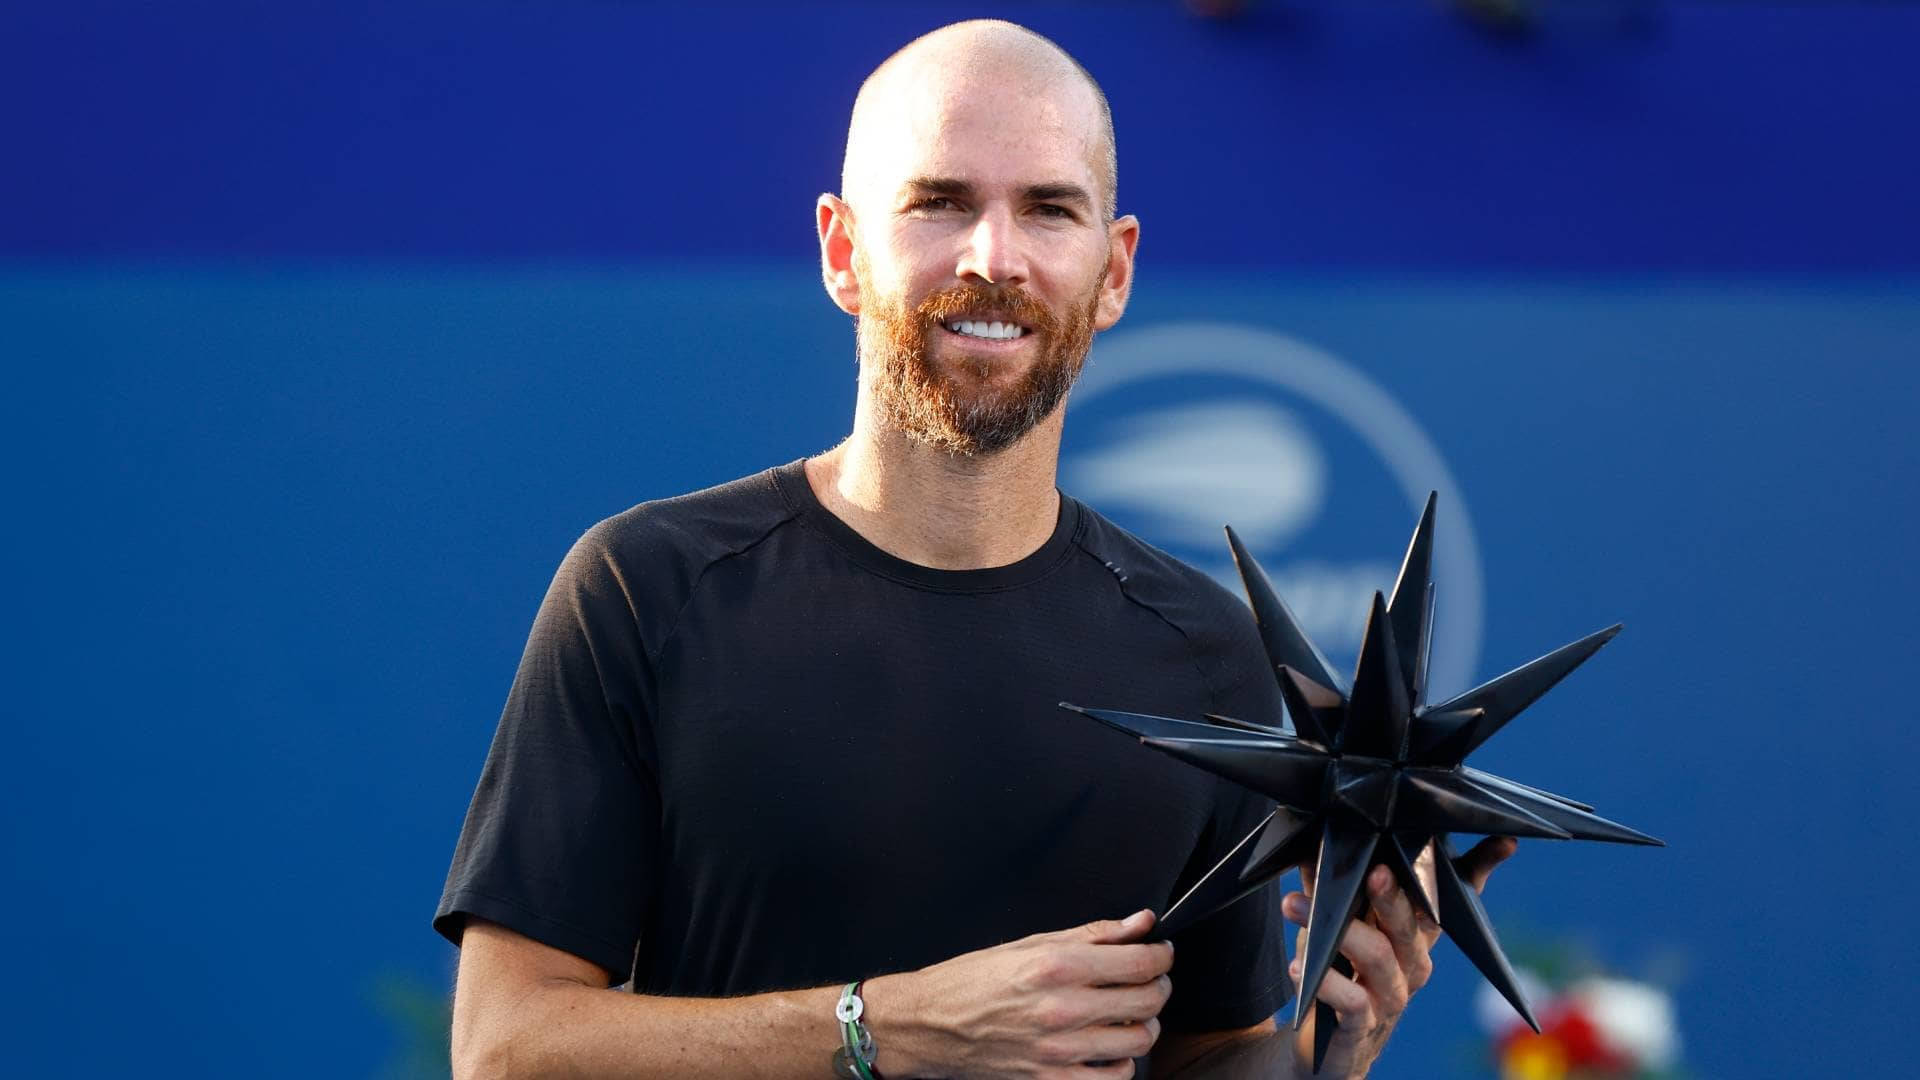 A Man Holding A Star On A Tennis Court Wallpaper